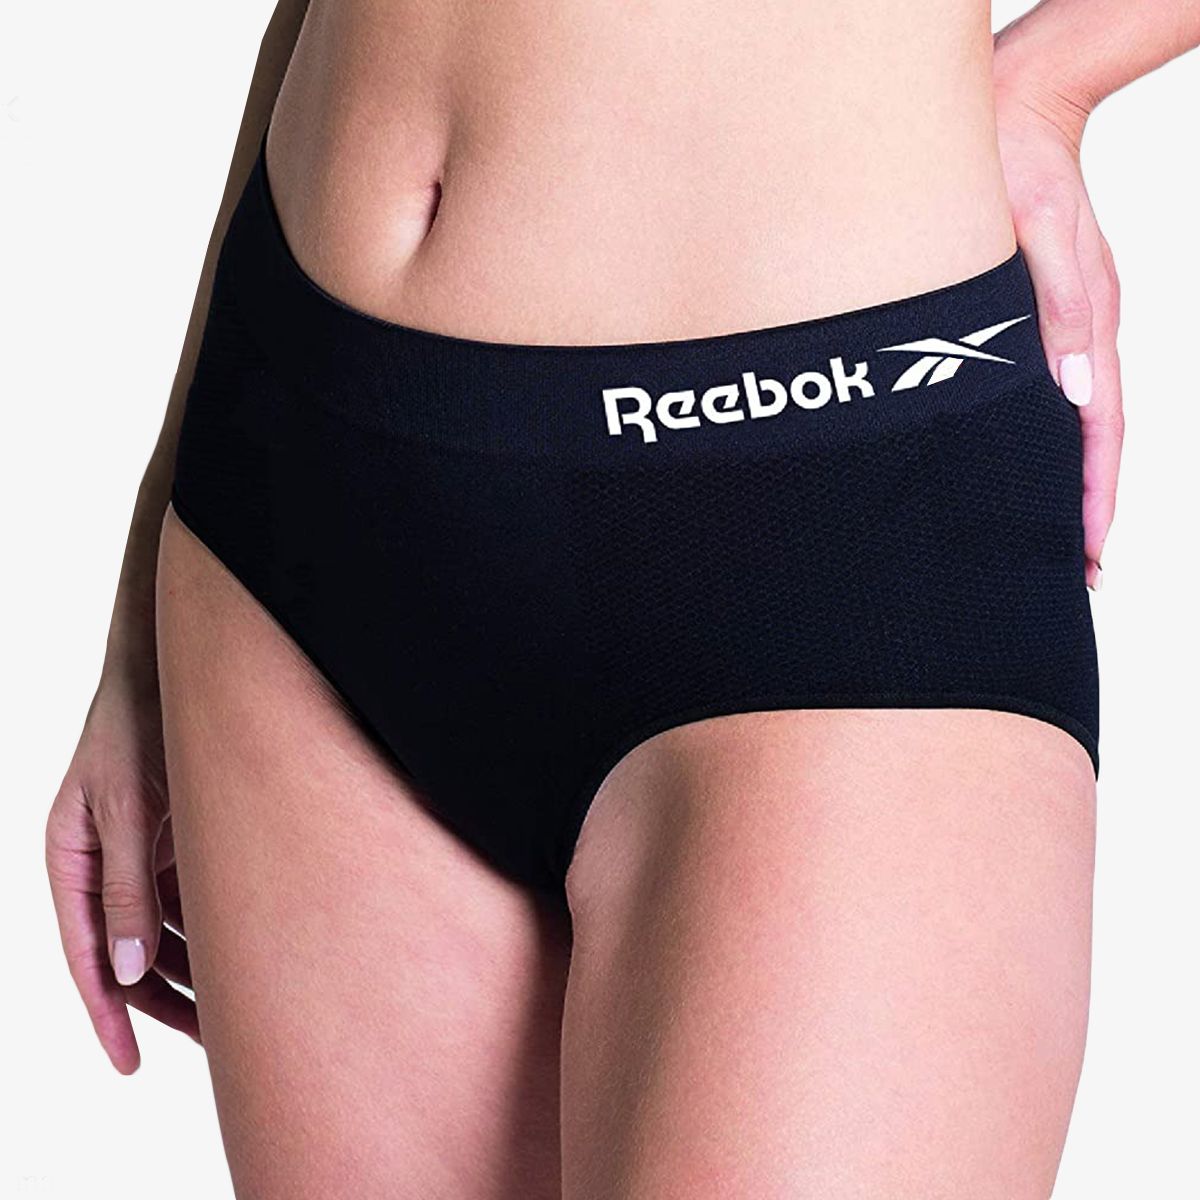 Buy Reebok Womens Seamless Hipster Panties 5-Pack online